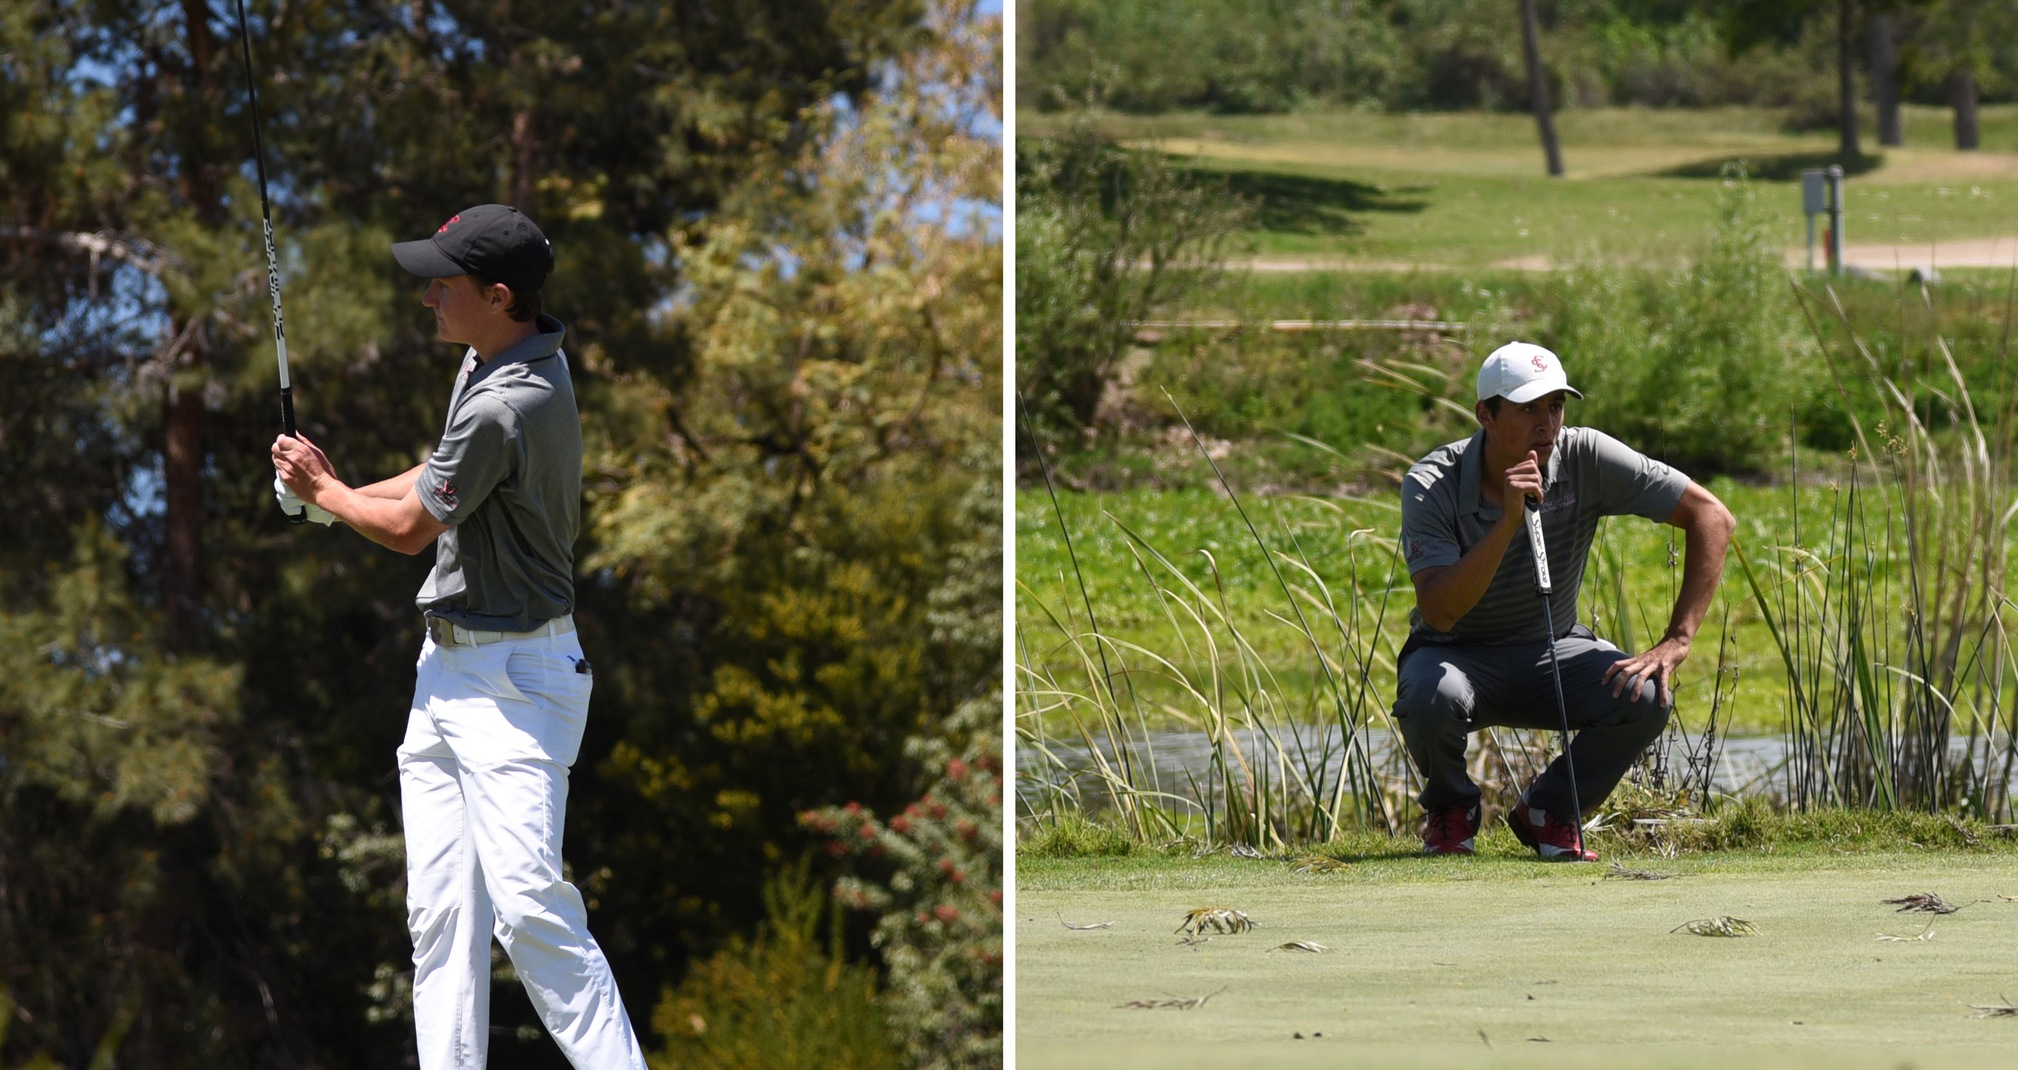 Two Men's Golfers Advance in U.S. Open Qualifying